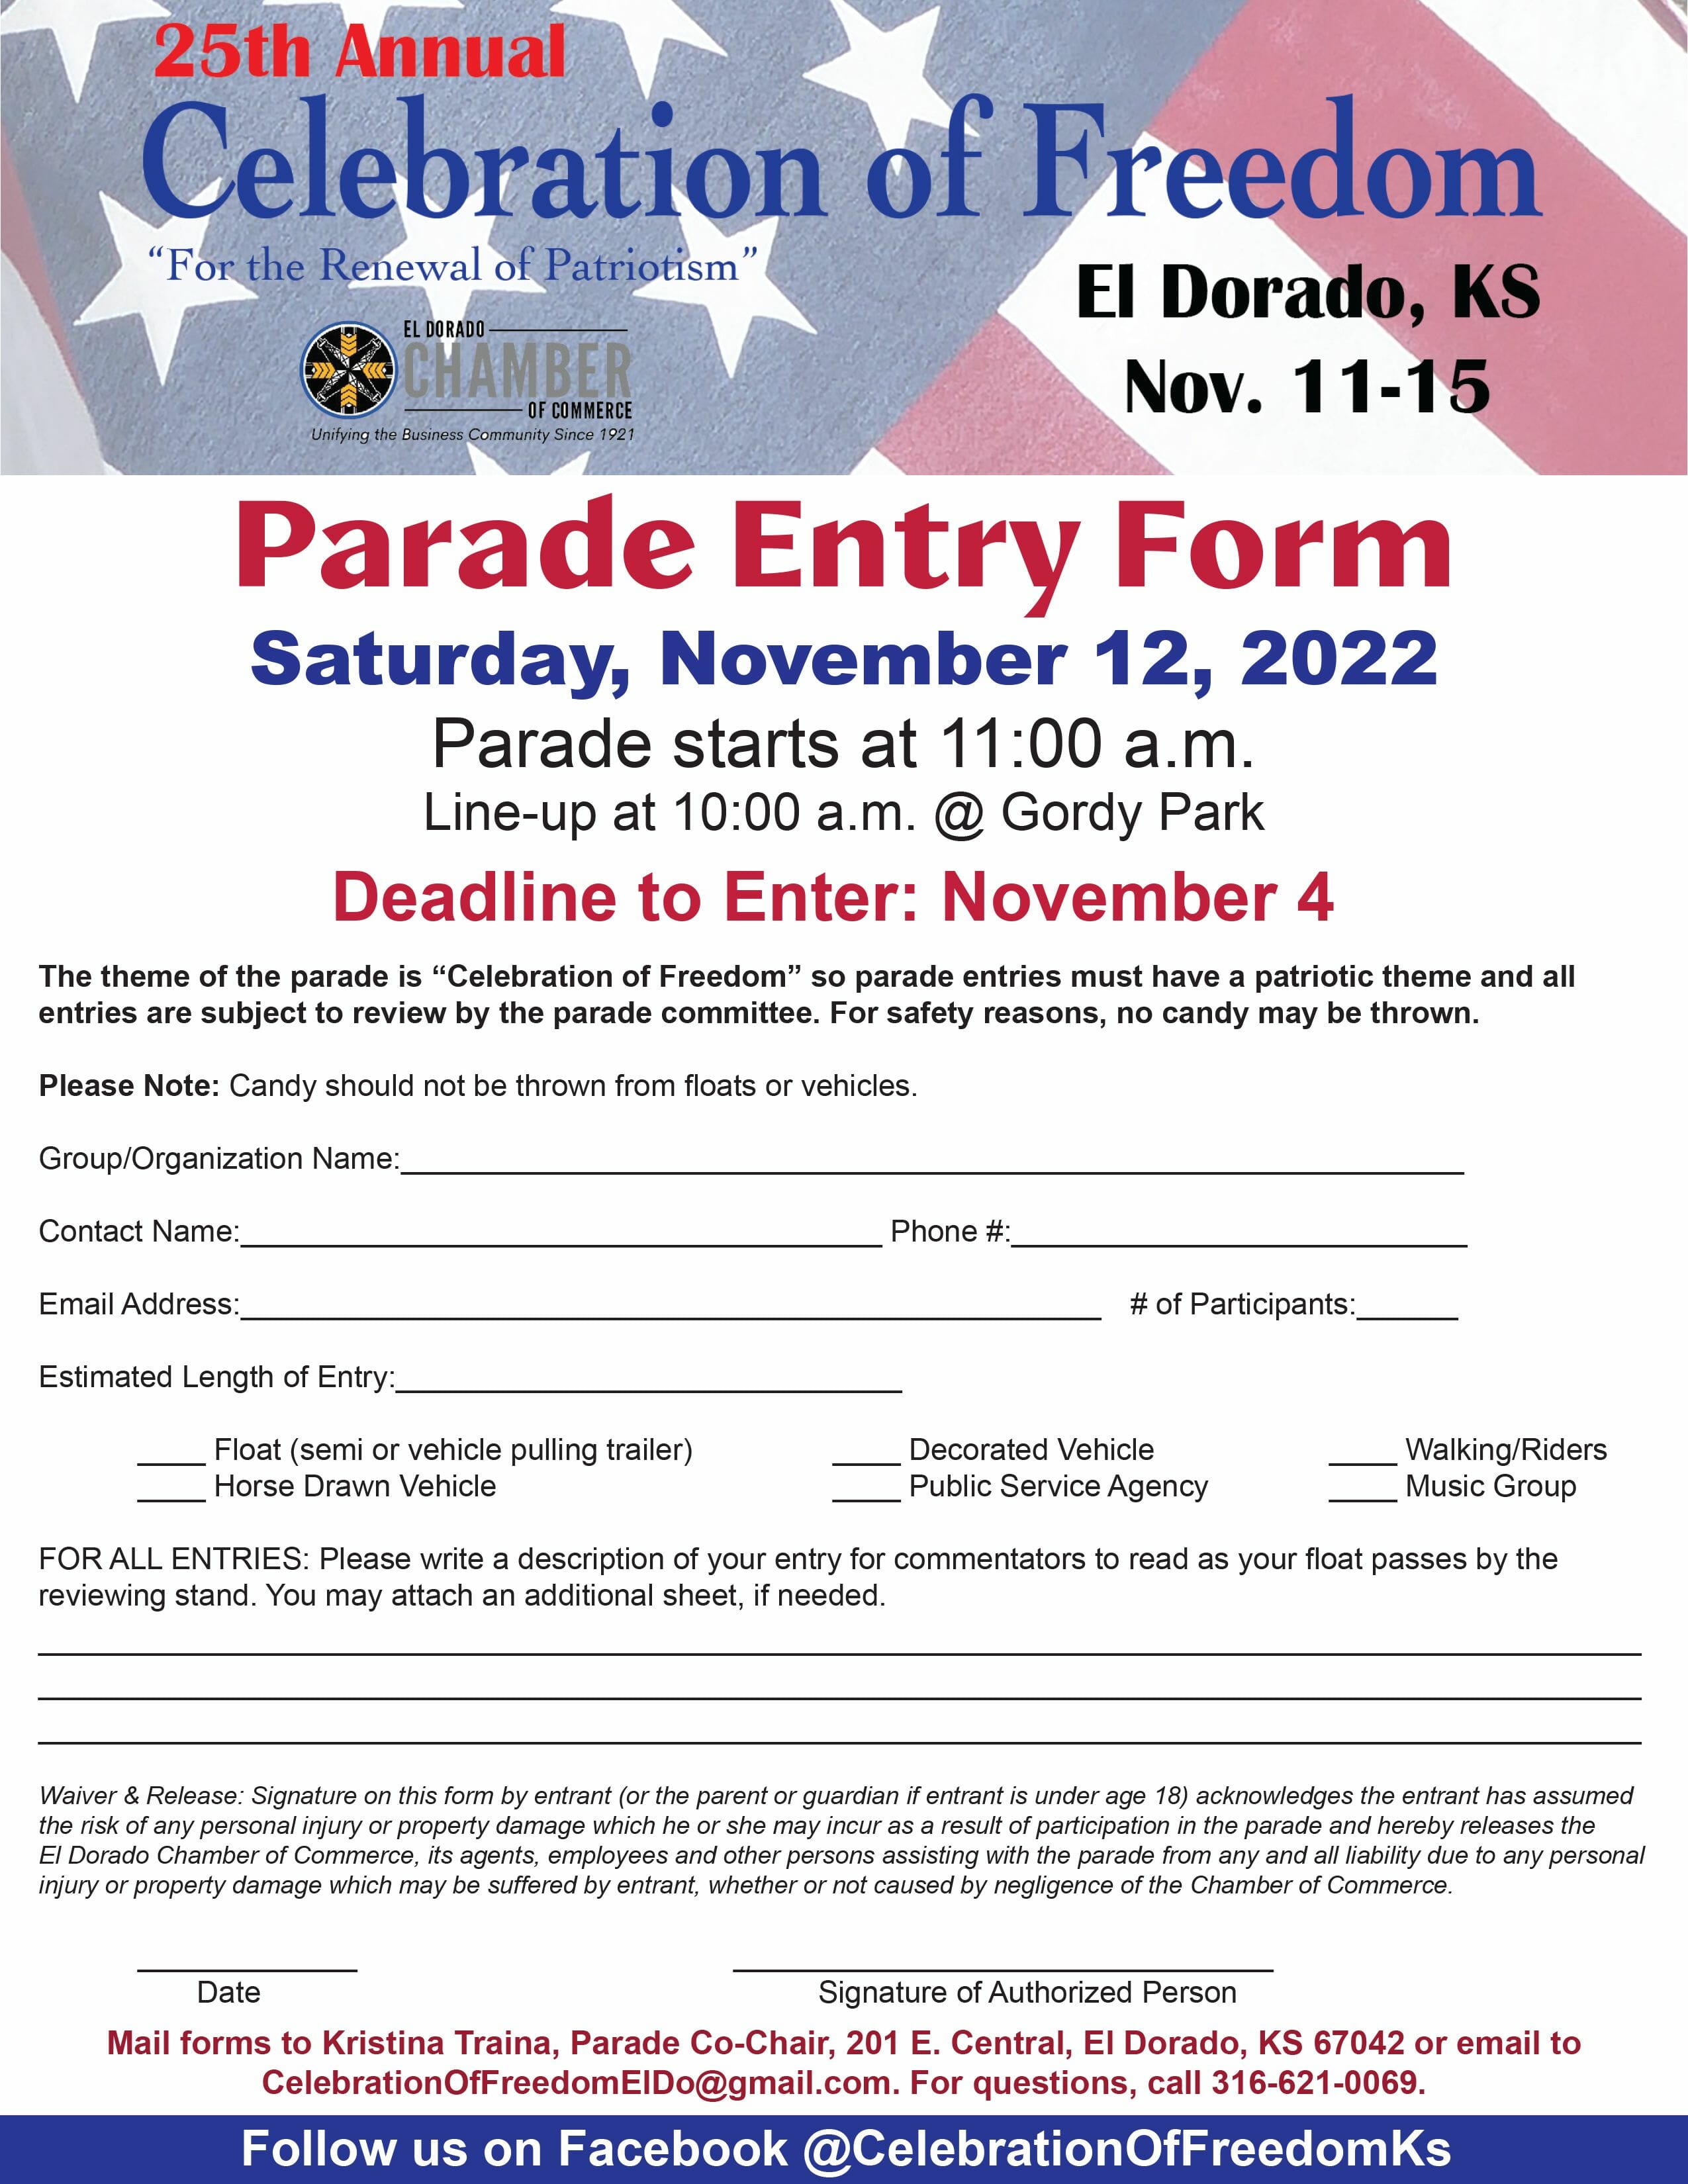 2022 Parade entry form (PDF)